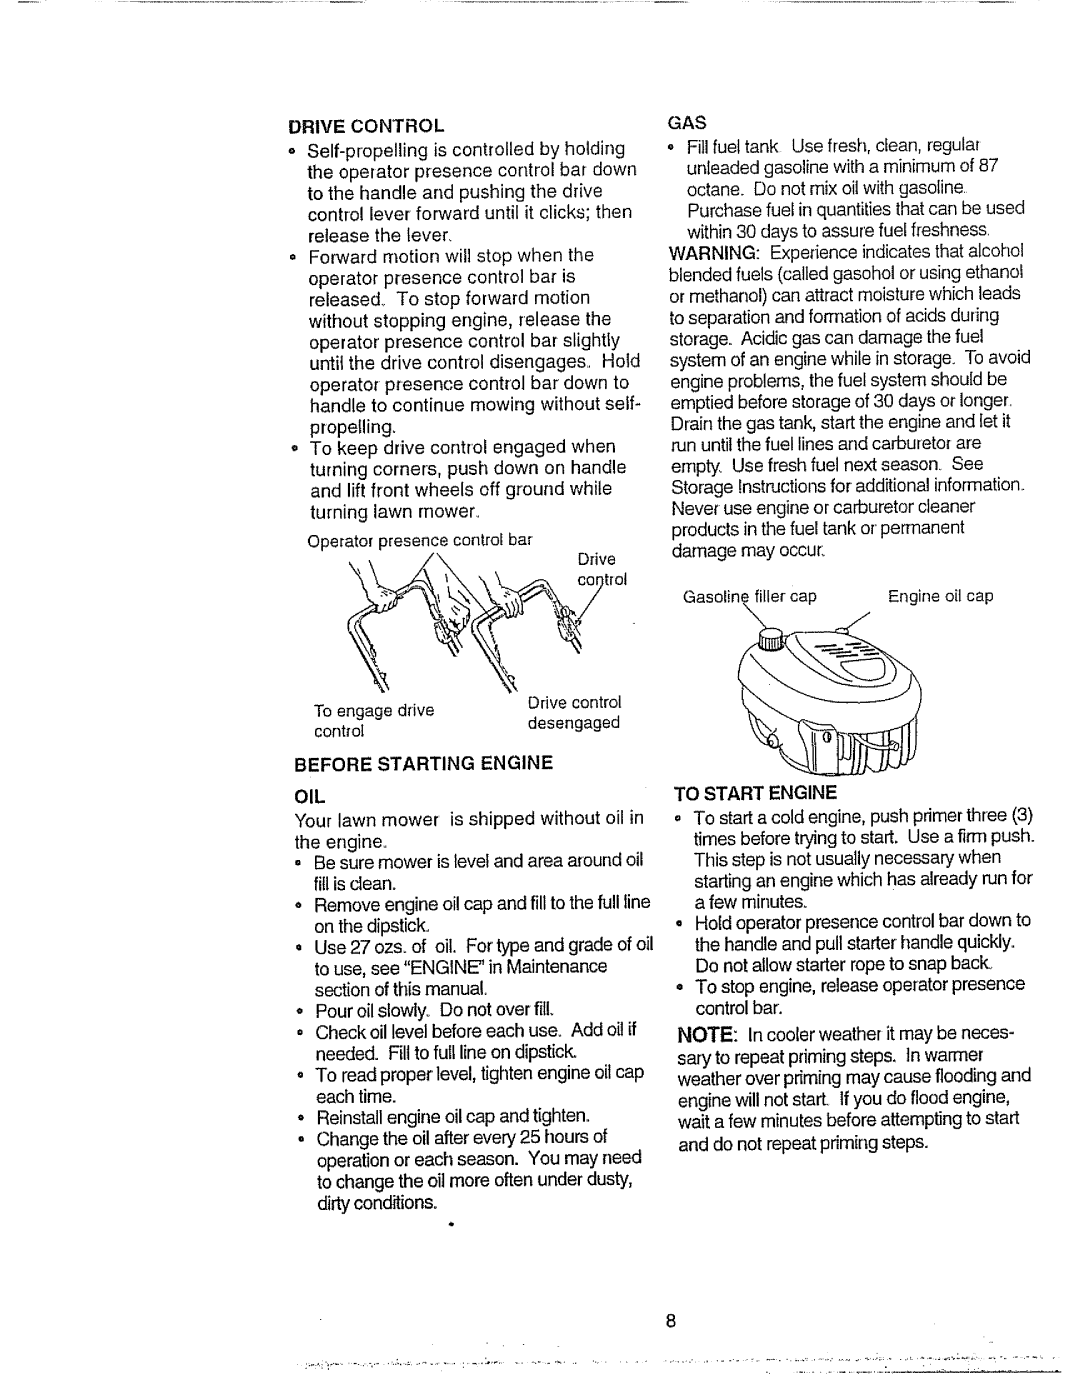 Craftsman 917.377592 manual Before Starting, To Start Engine 